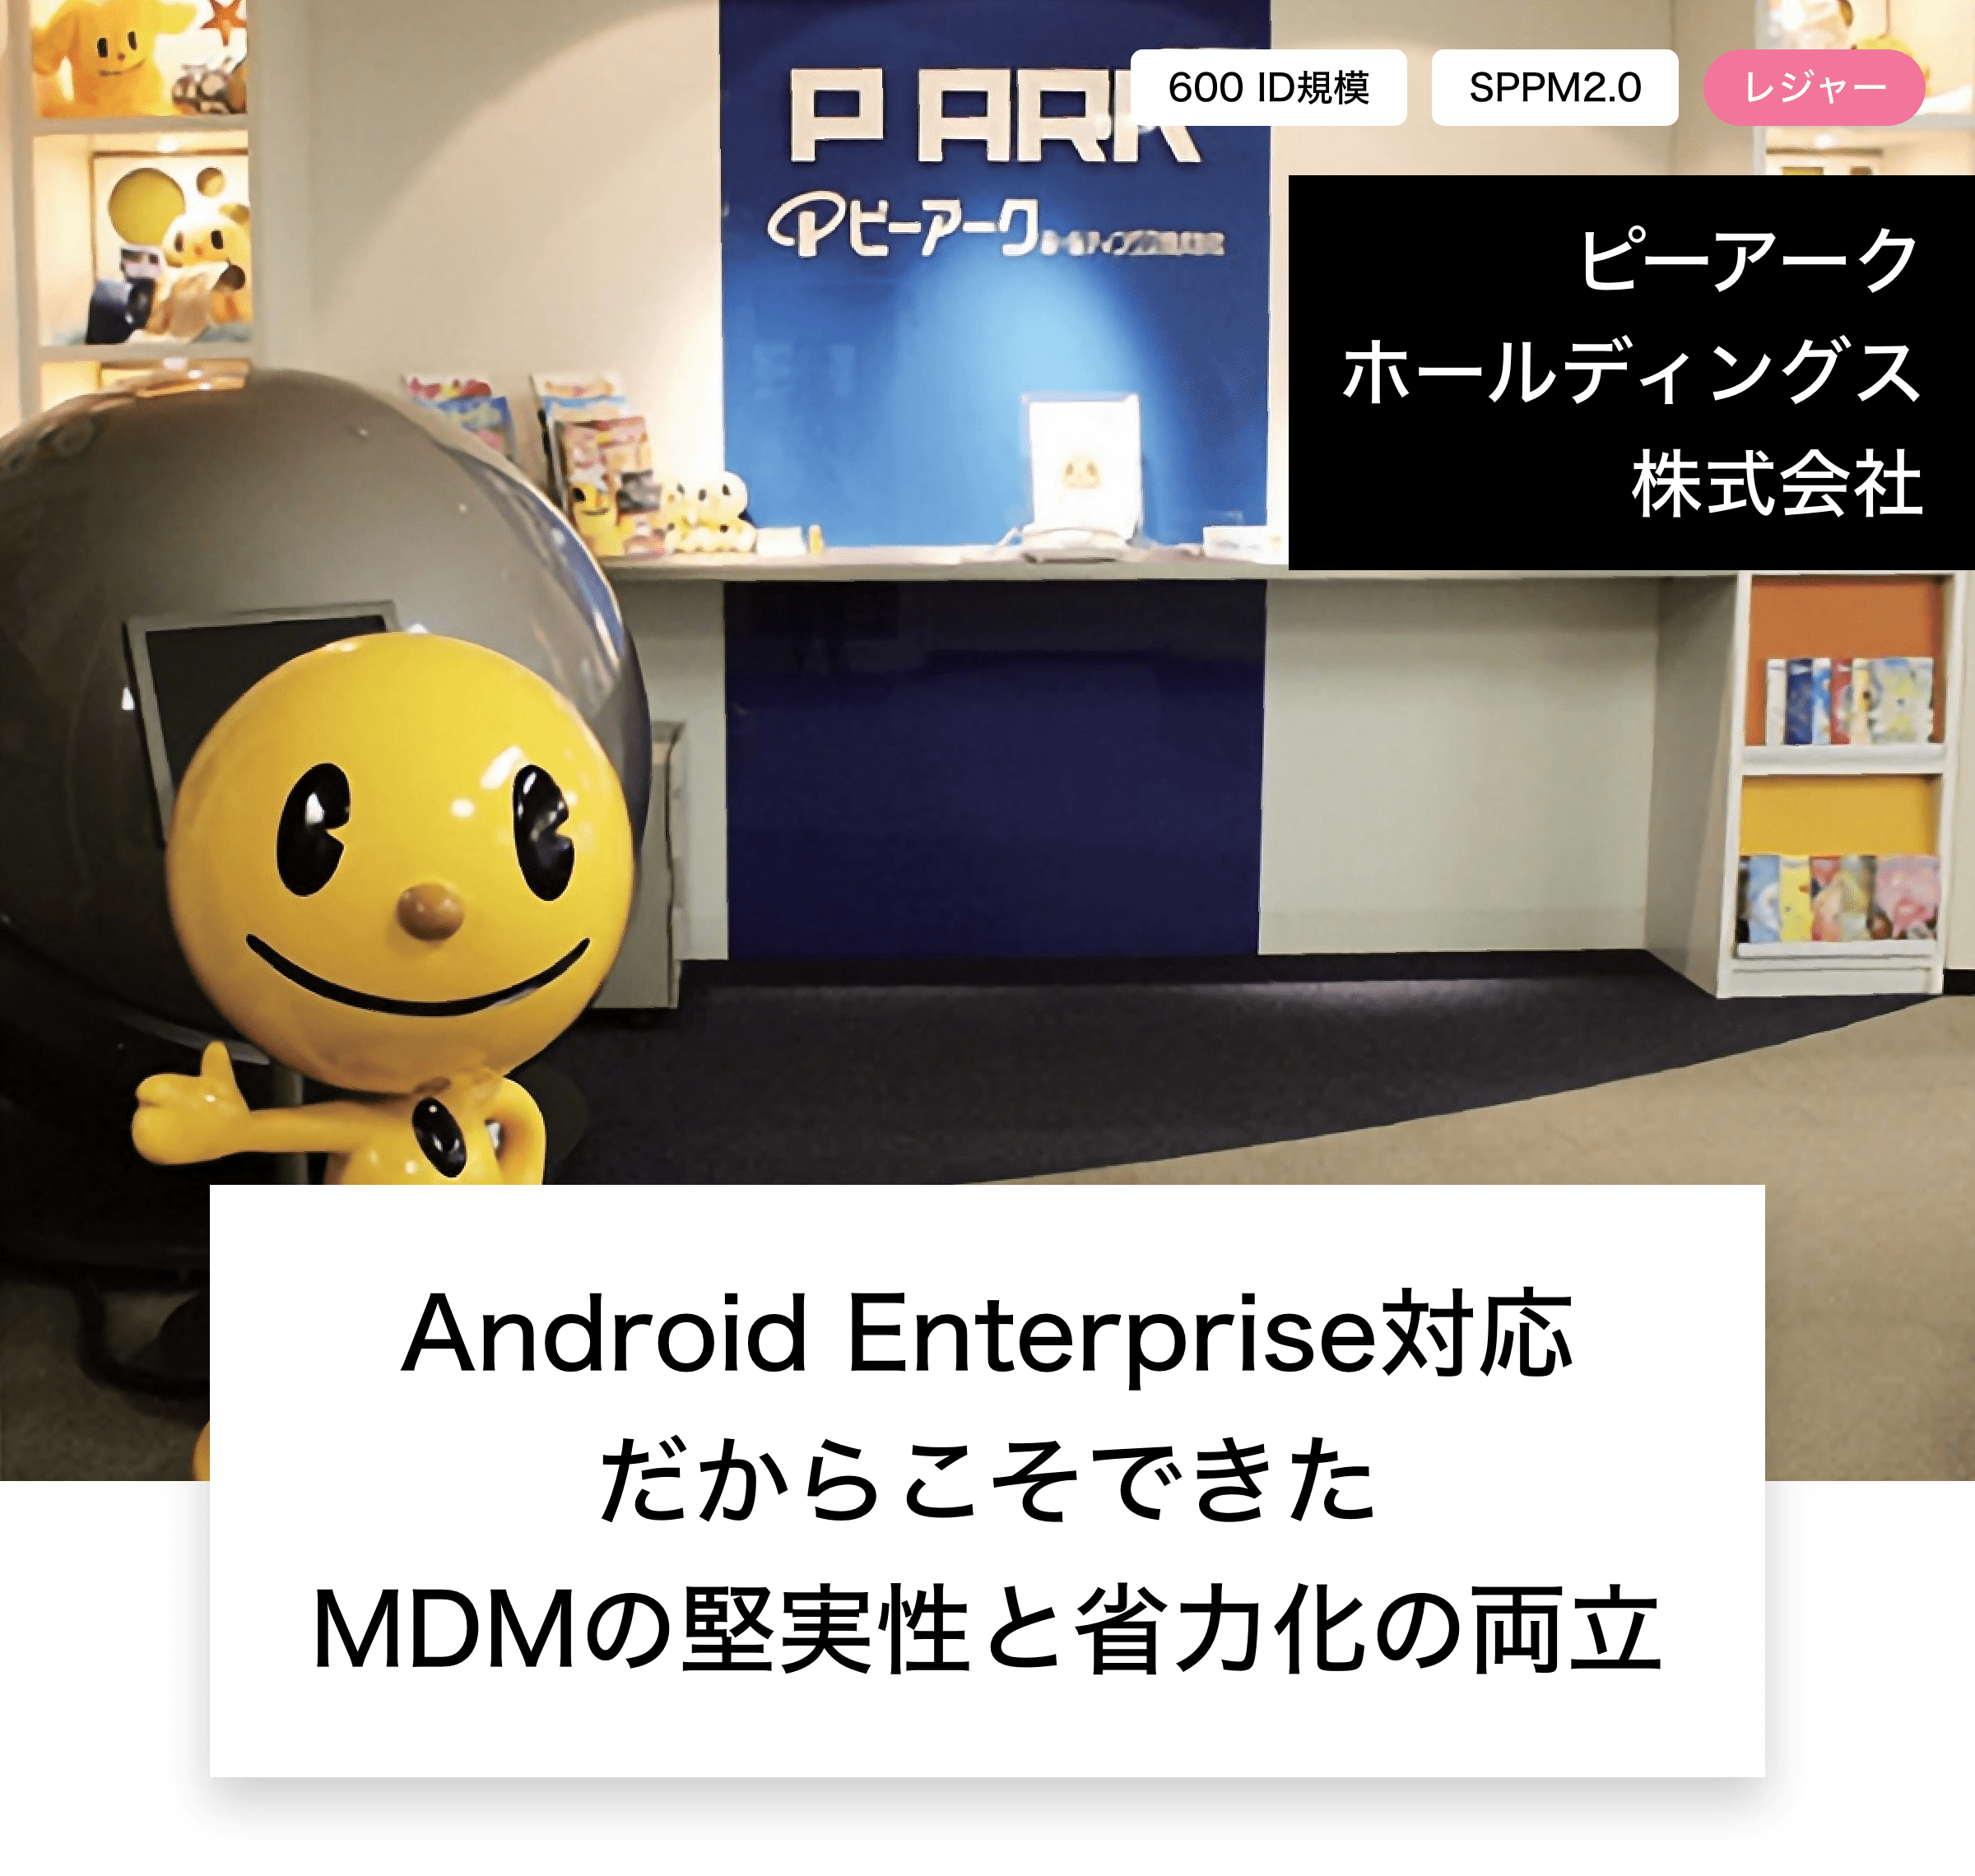 ピーアークホールディングス株式会社 Android Enterprise対応だからこそできたMDMの堅実性と省力化の両立